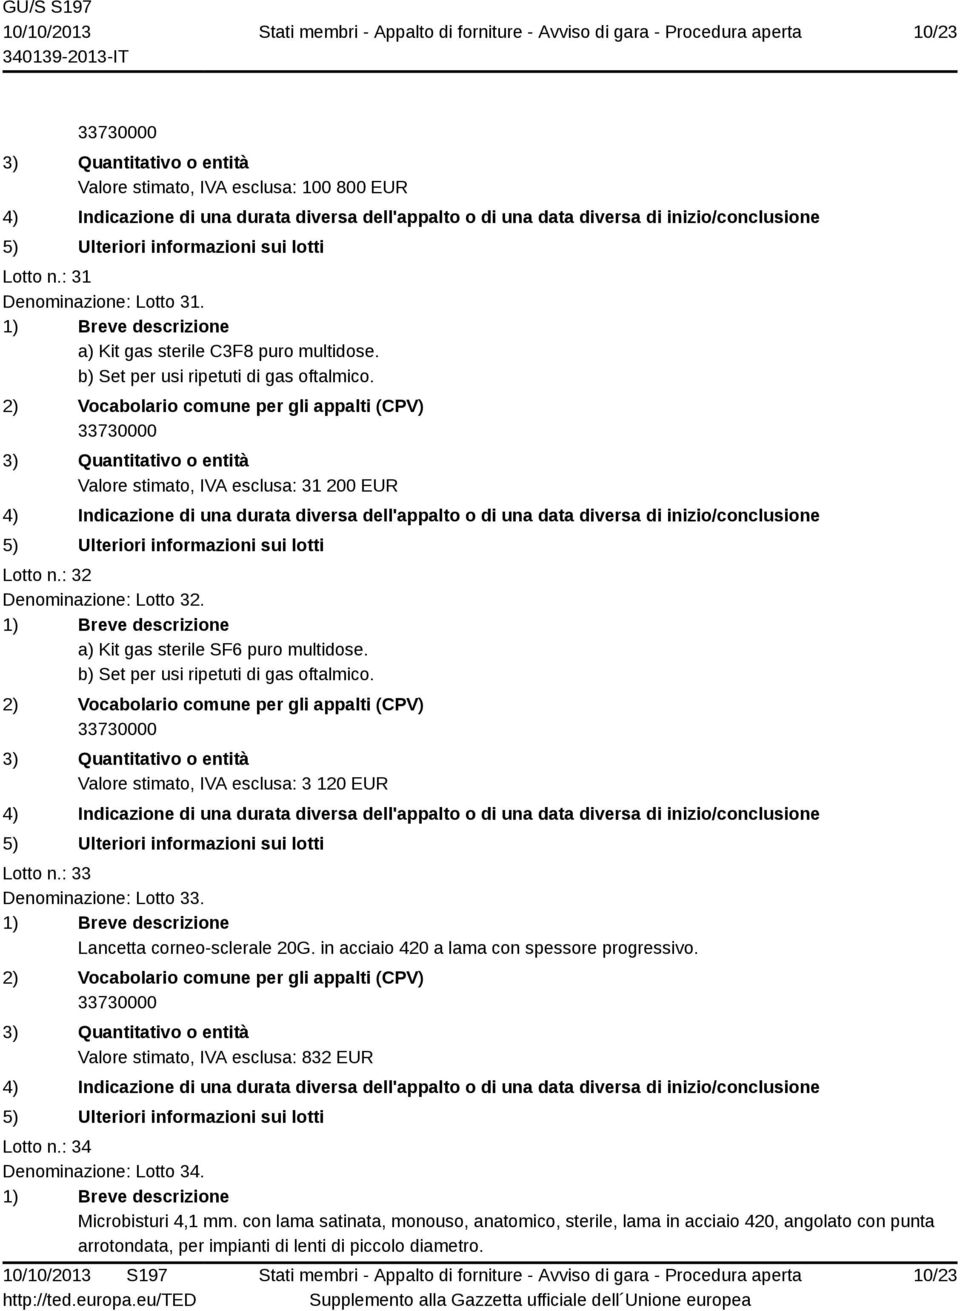 Valore stimato, IVA esclusa: 3 120 EUR Lotto n.: 33 Denominazione: Lotto 33. Lancetta corneo-sclerale 20G. in acciaio 420 a lama con spessore progressivo.